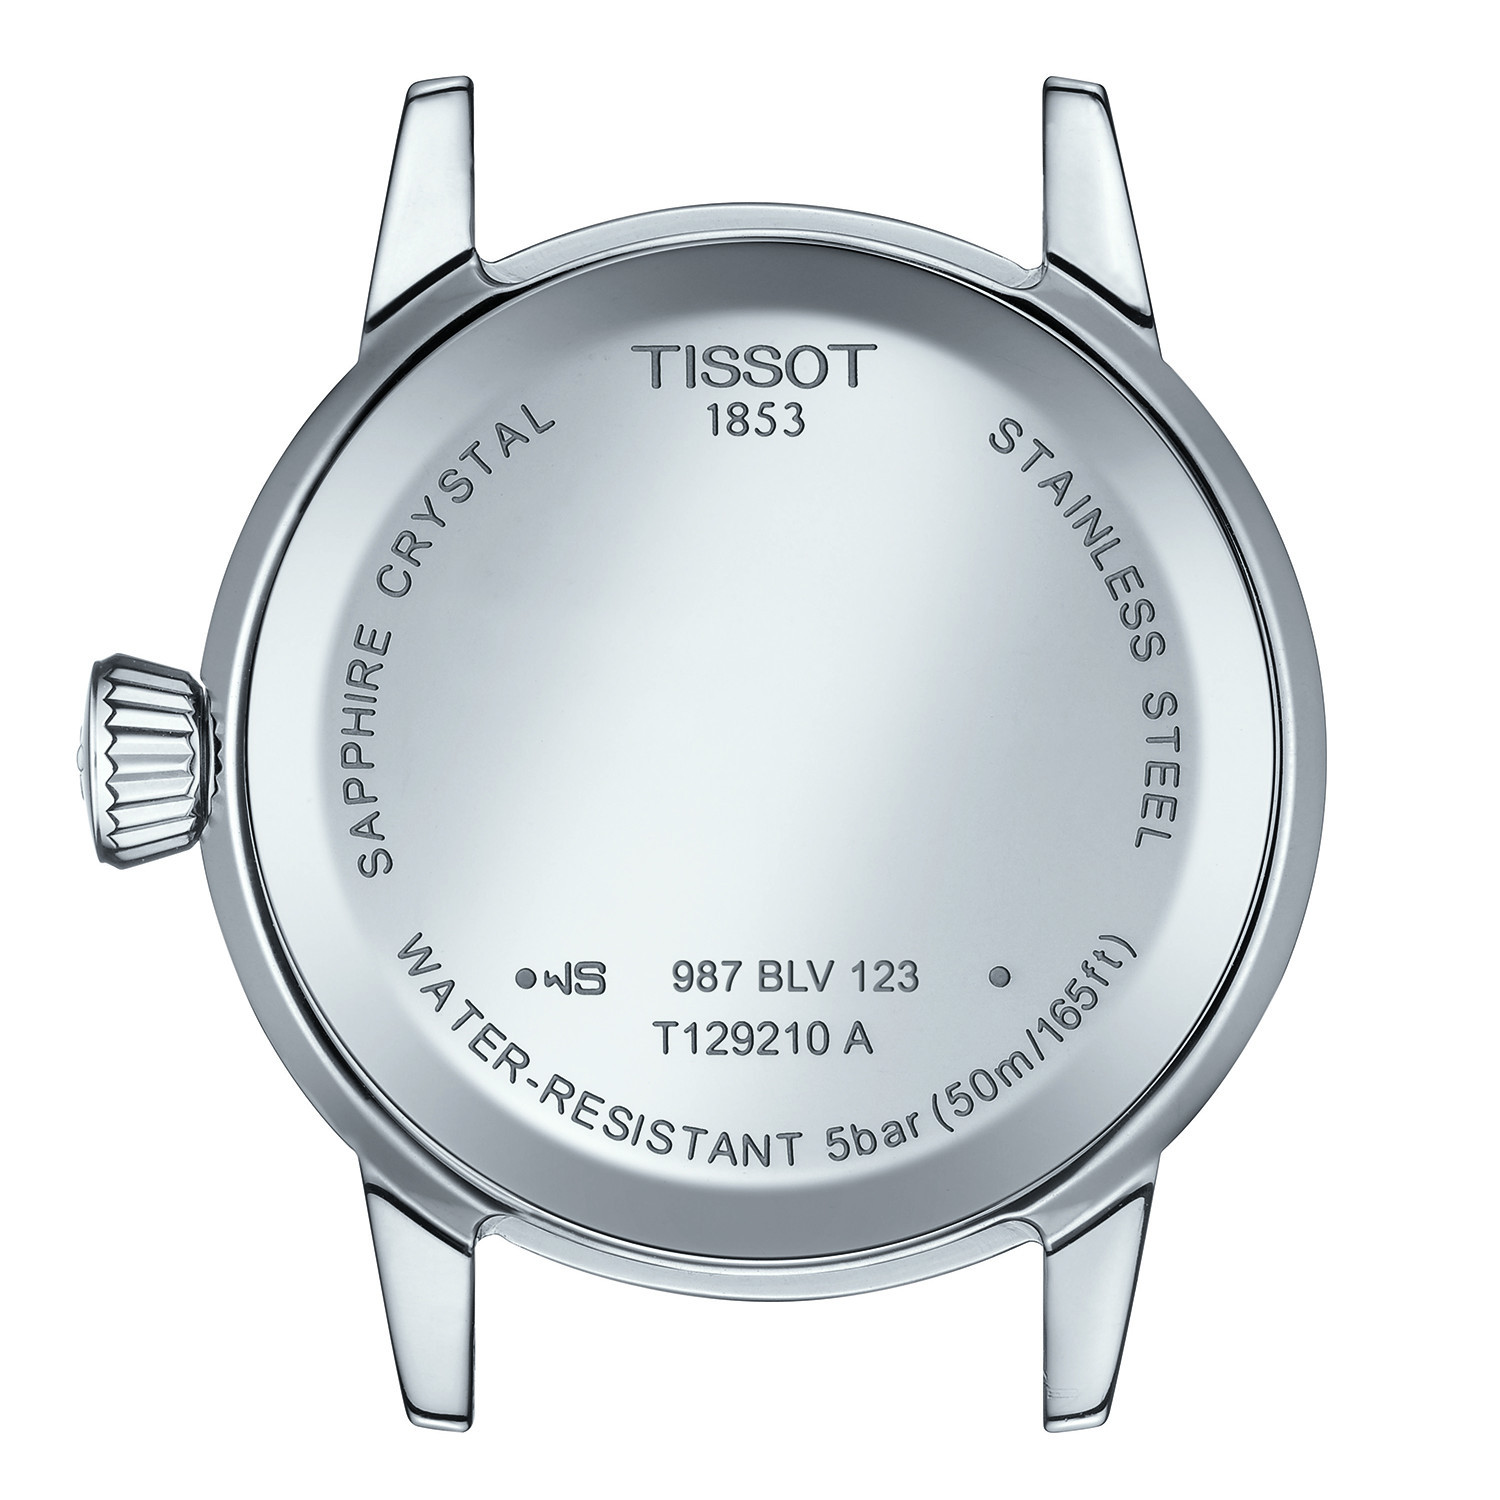 Montre femme Tissot classic dream cuir gris